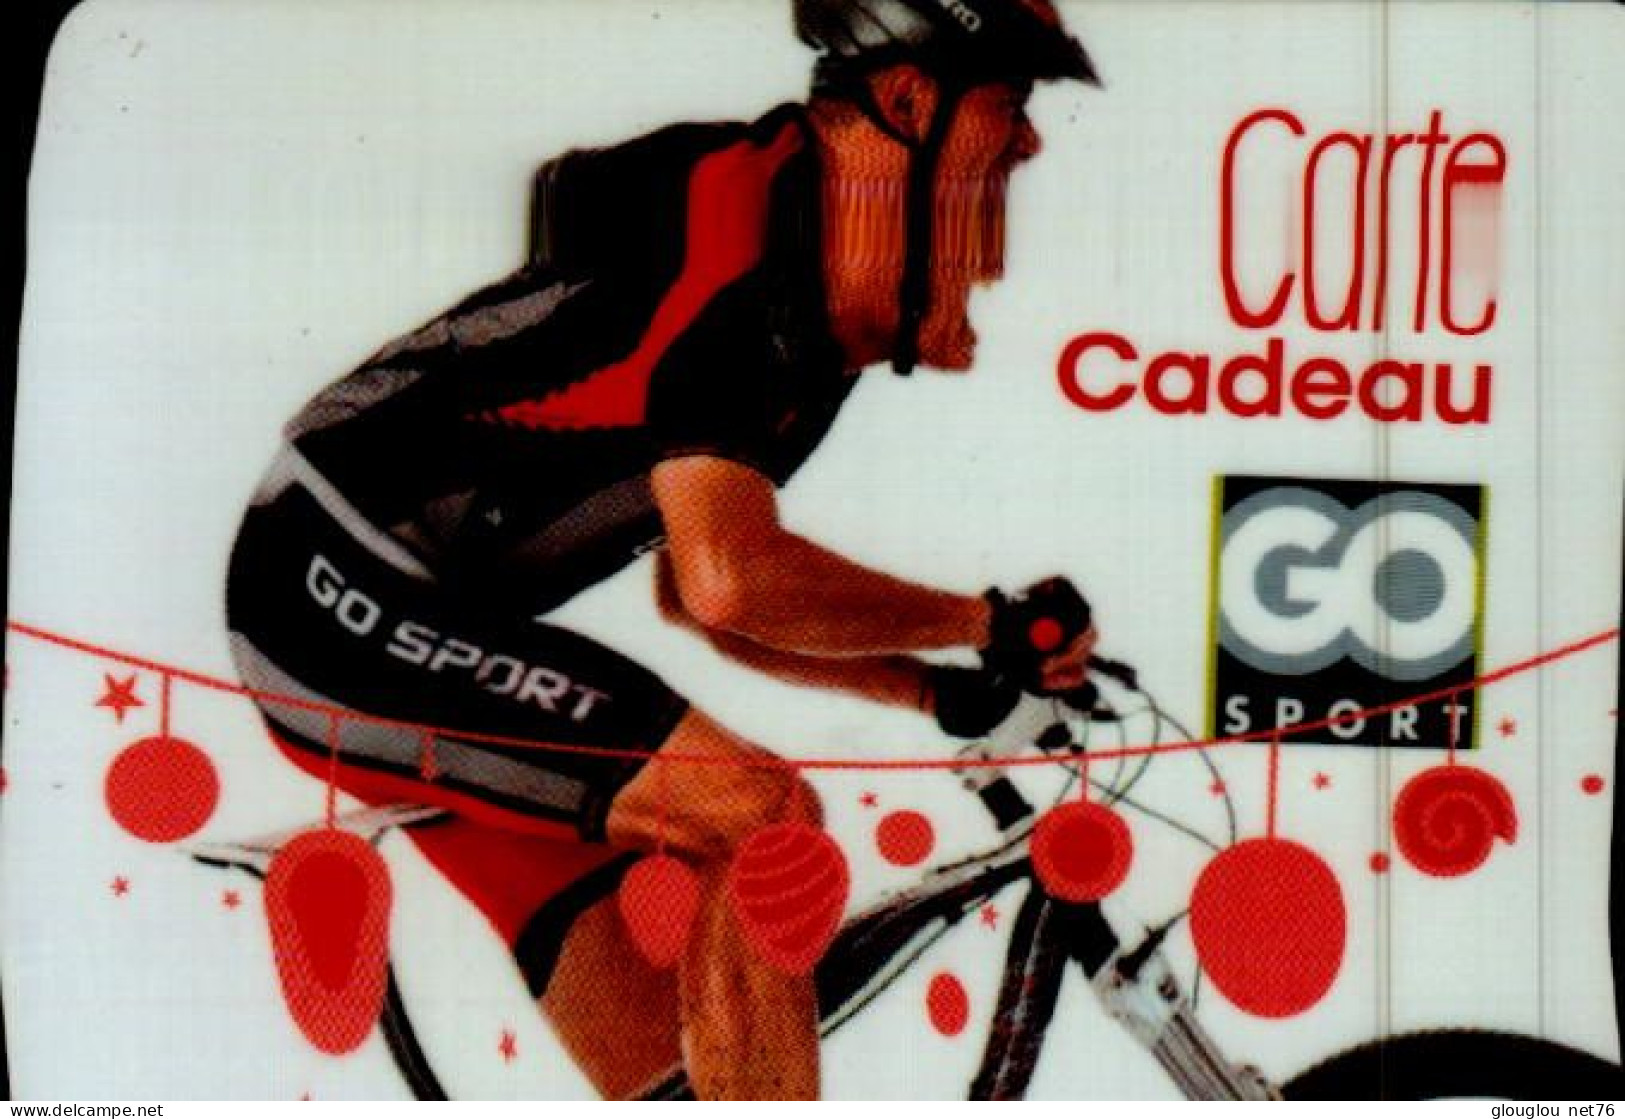 CARTE CADEAU...GO SPORT...CYCLISTE - Cartes De Fidélité Et Cadeau